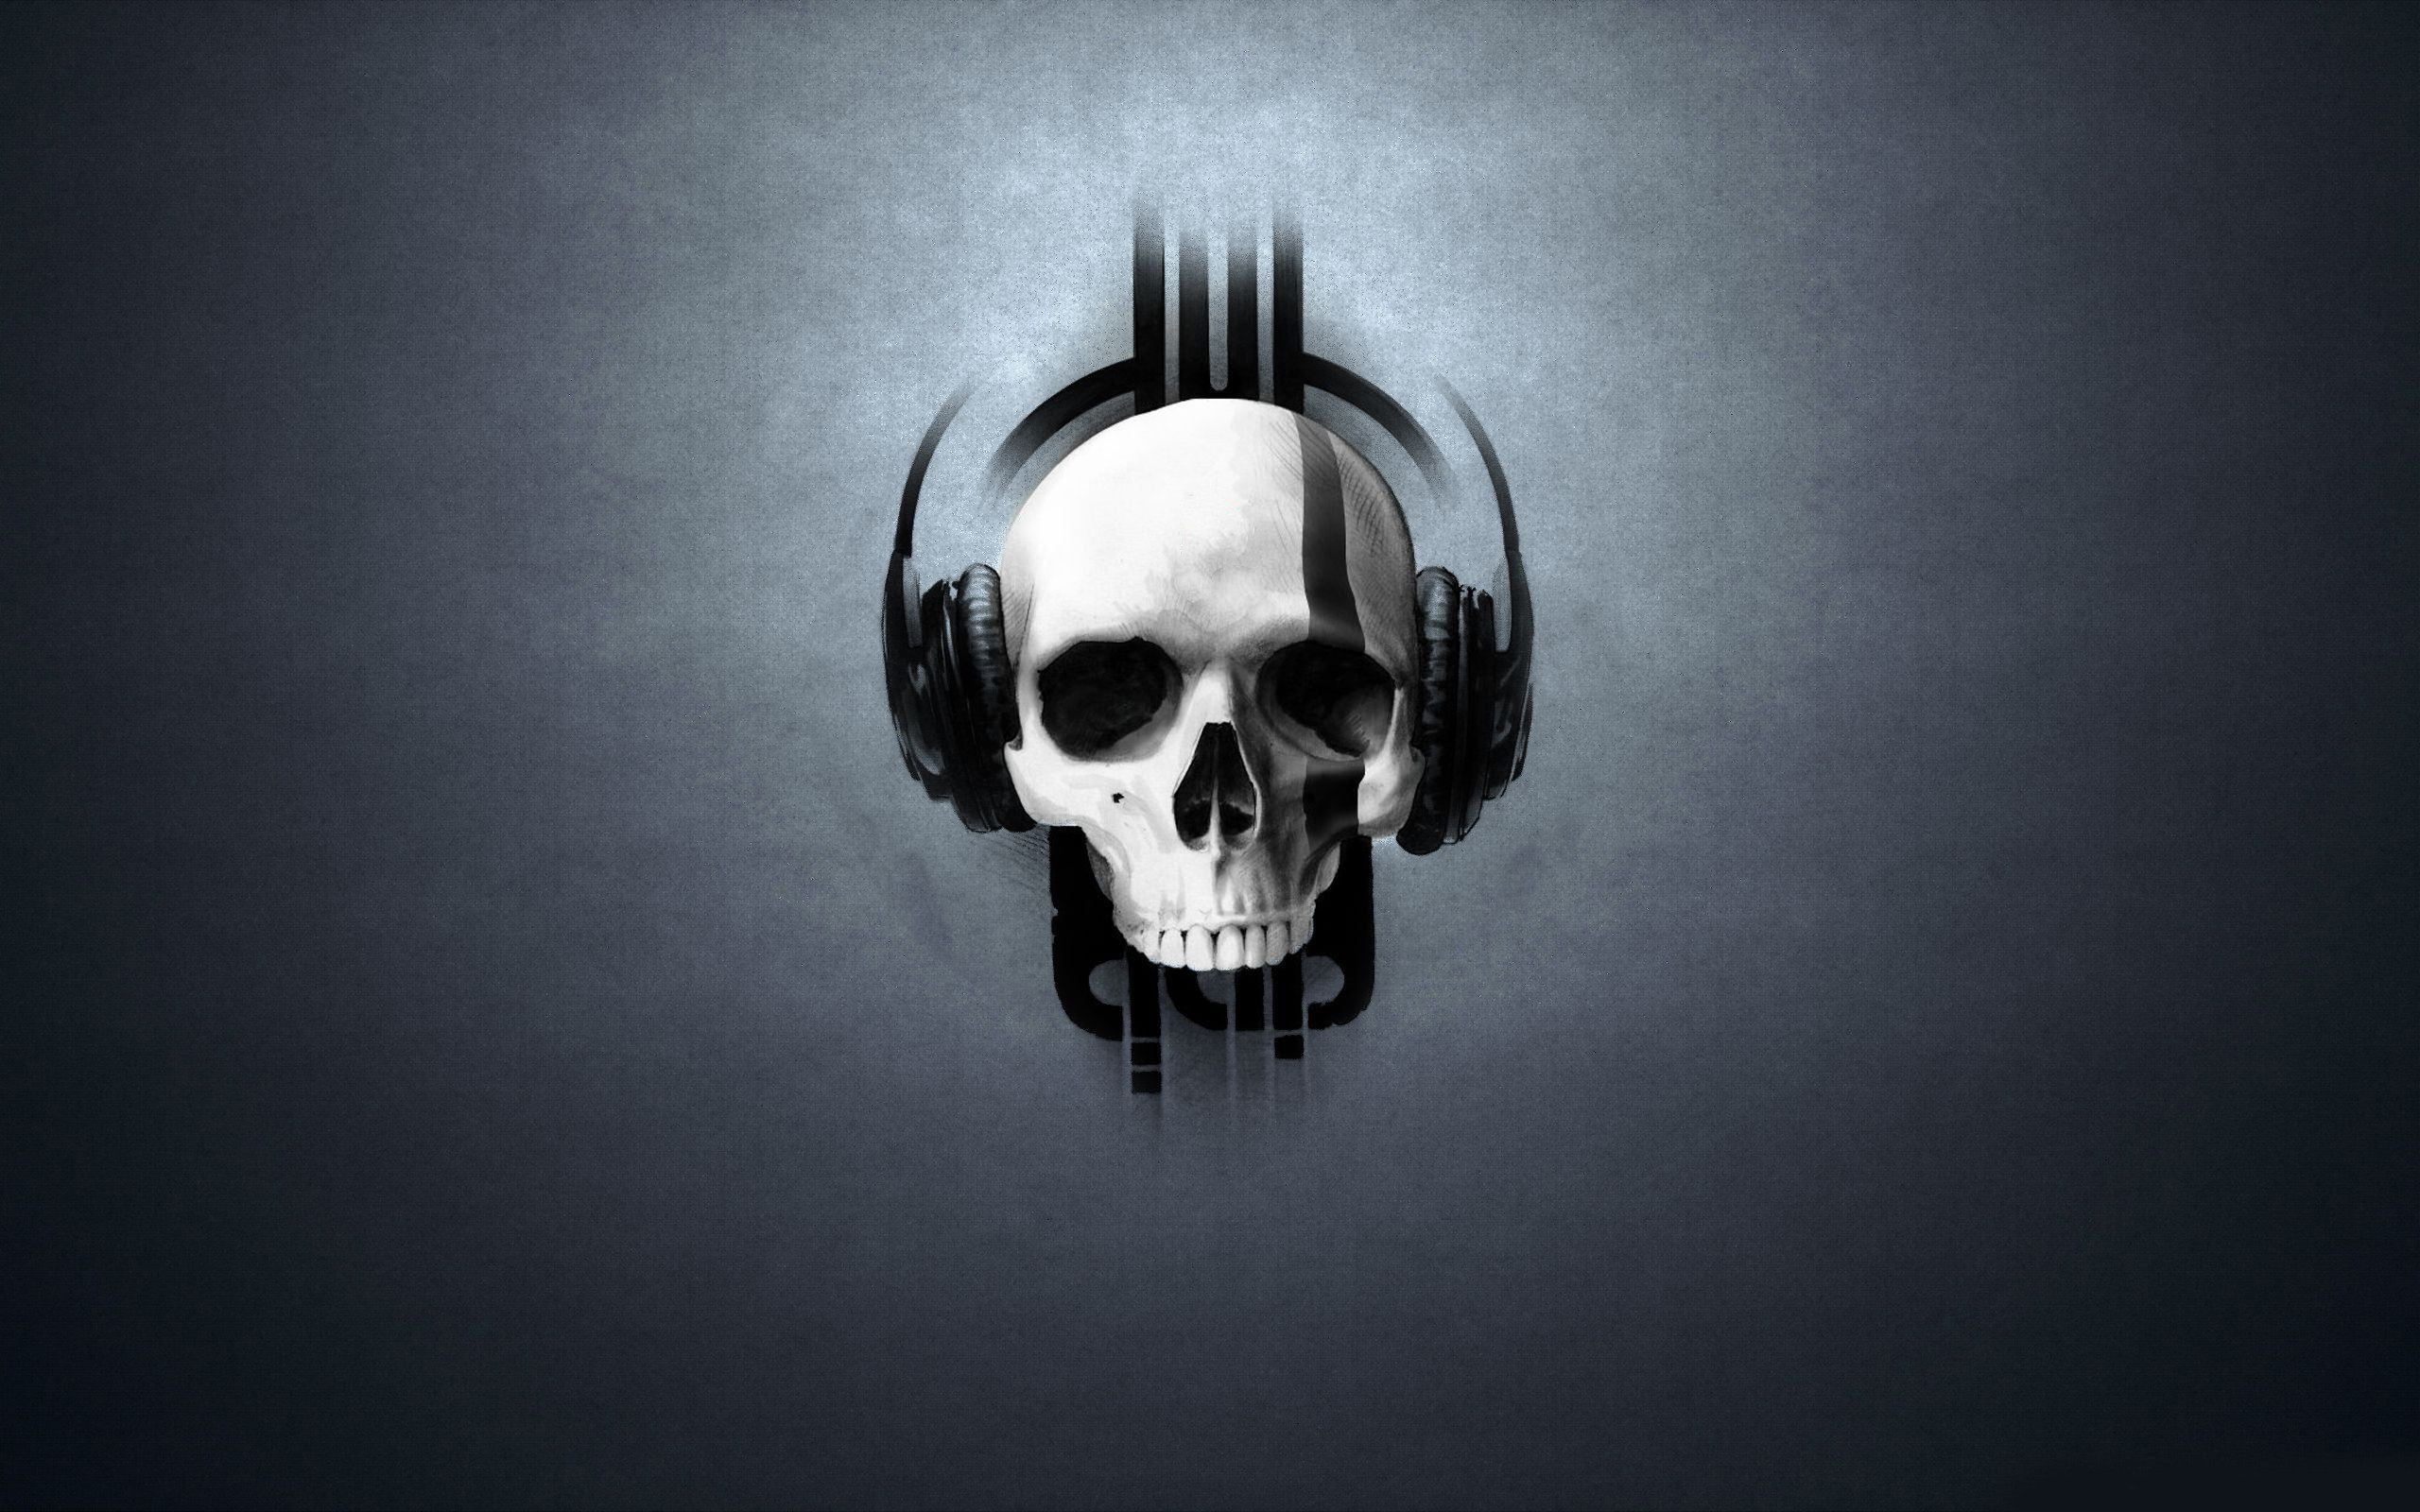 2560x1600 Skull with headphones Music HD desktop wallpaper, Skull wallpaper,  Headphone wallpaper - Music no.